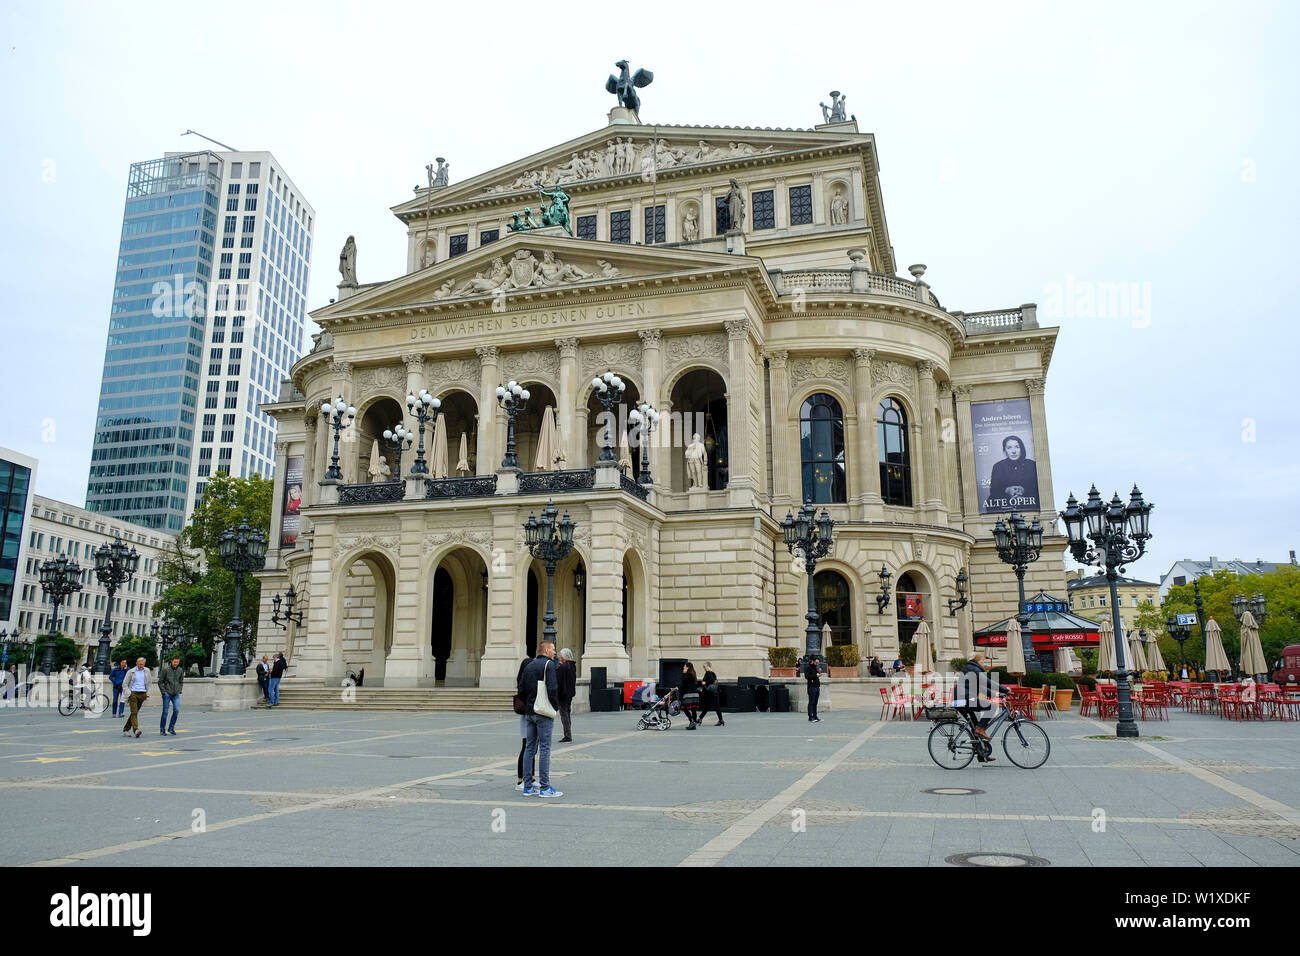 22.10.2018, Frankfurt am Main, Hesse, Allemagne - l'Alte Oper am Opernplatz dans Frankfurt am Main - die Alte Oper am Opernplatz dans Frankfurt am Main Banque D'Images